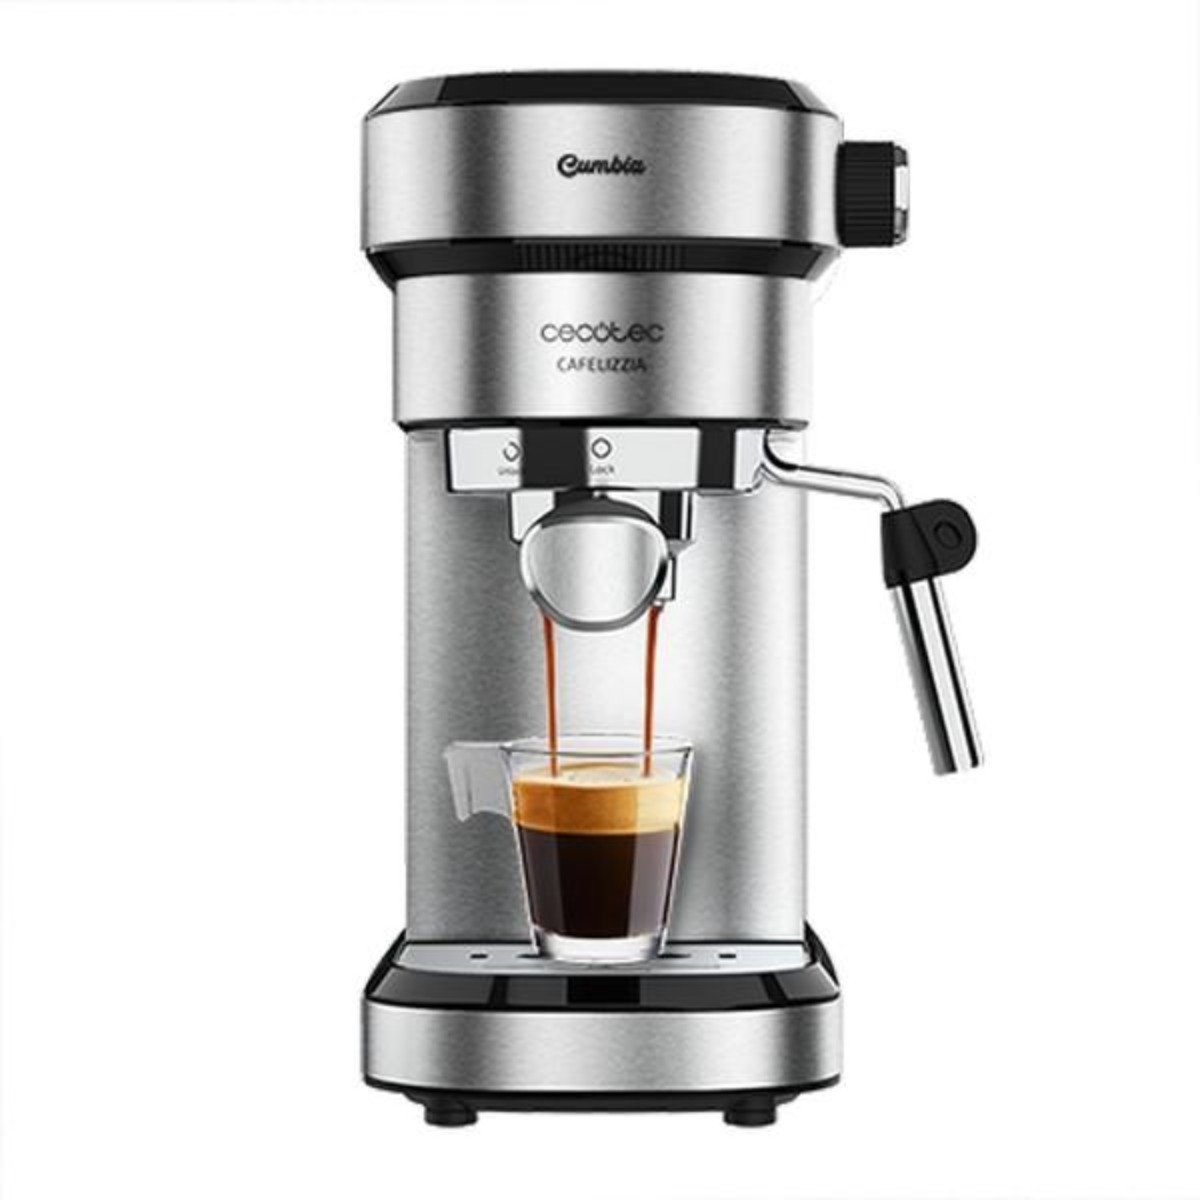 790 Cafelizzia Grau CECOTEC Kaffeemaschine